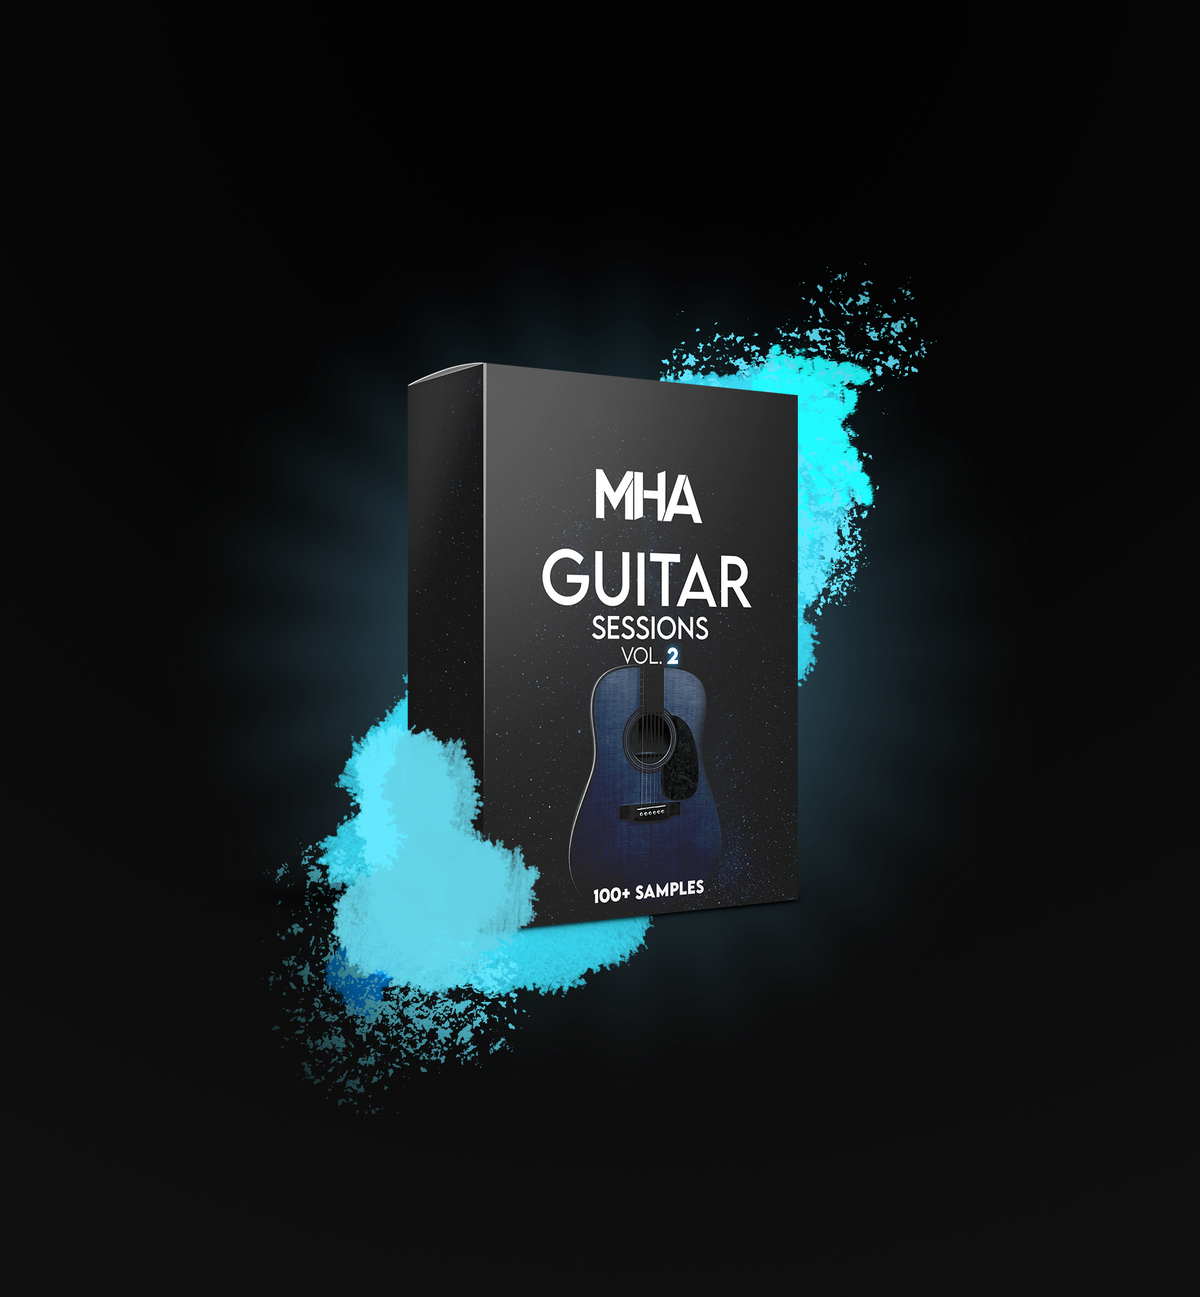 MHA Guitar Sessions Vol. 2